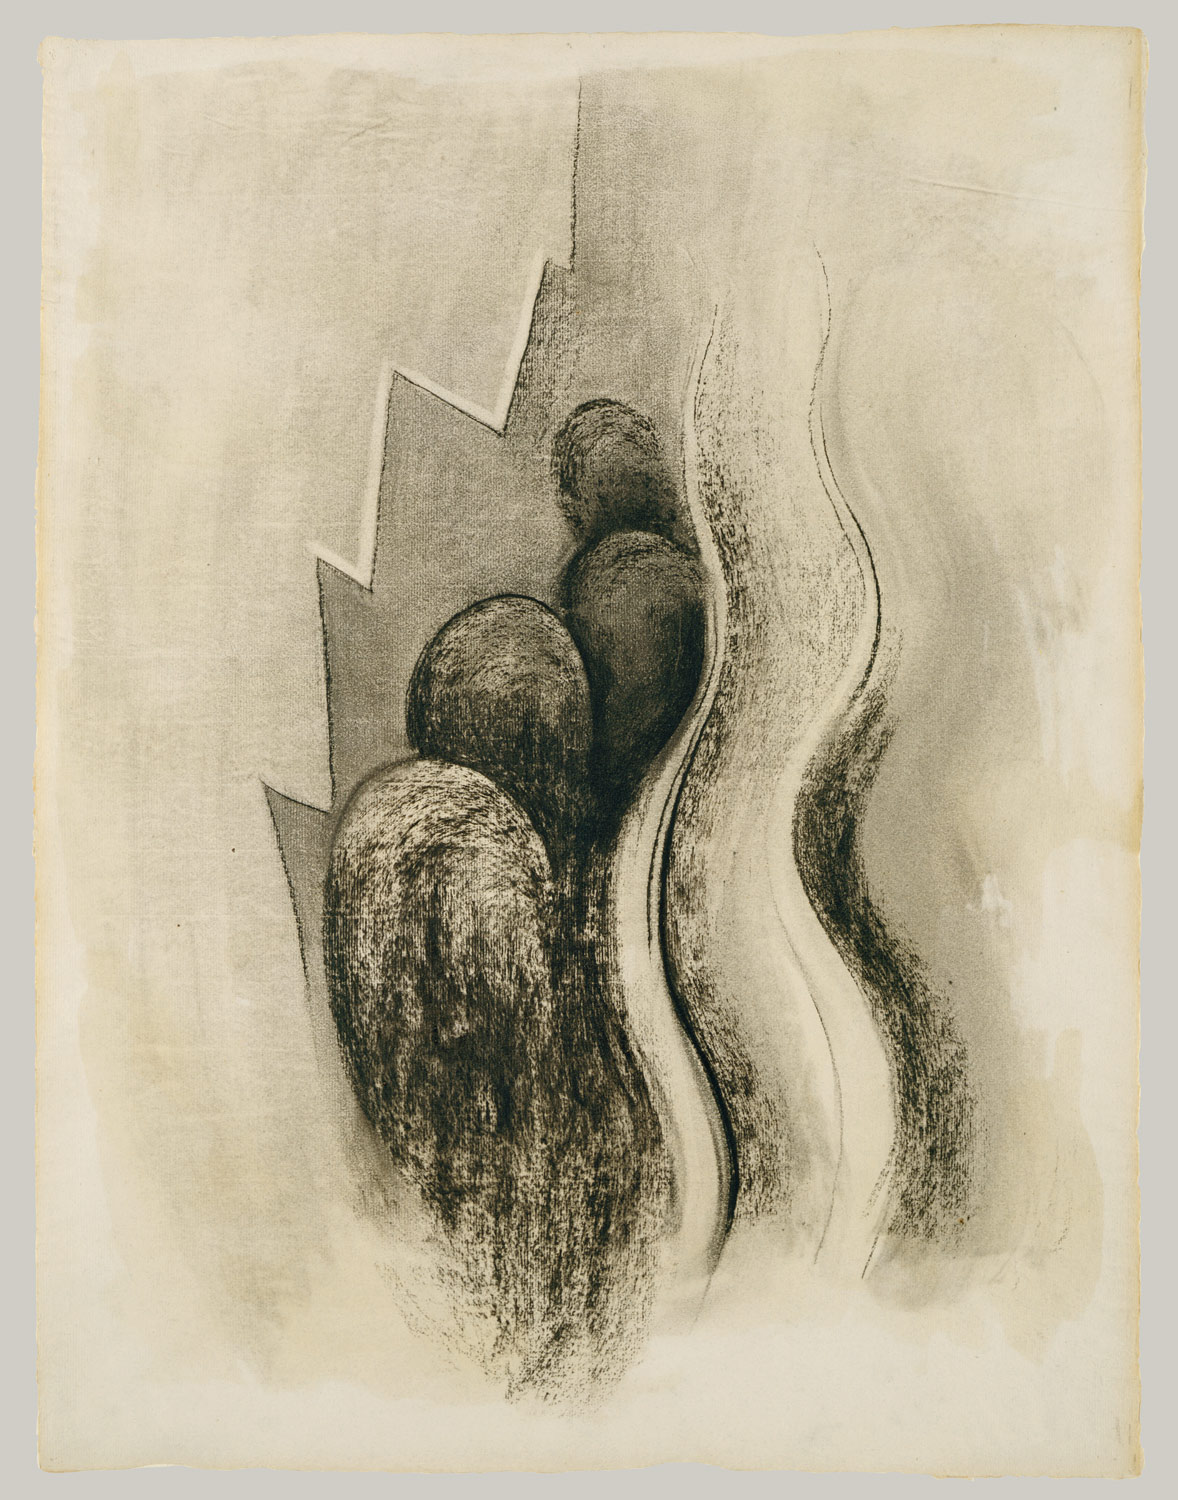 Drawing XIII O'Keeffe 50.236.2 Work of Art Heilbrunn